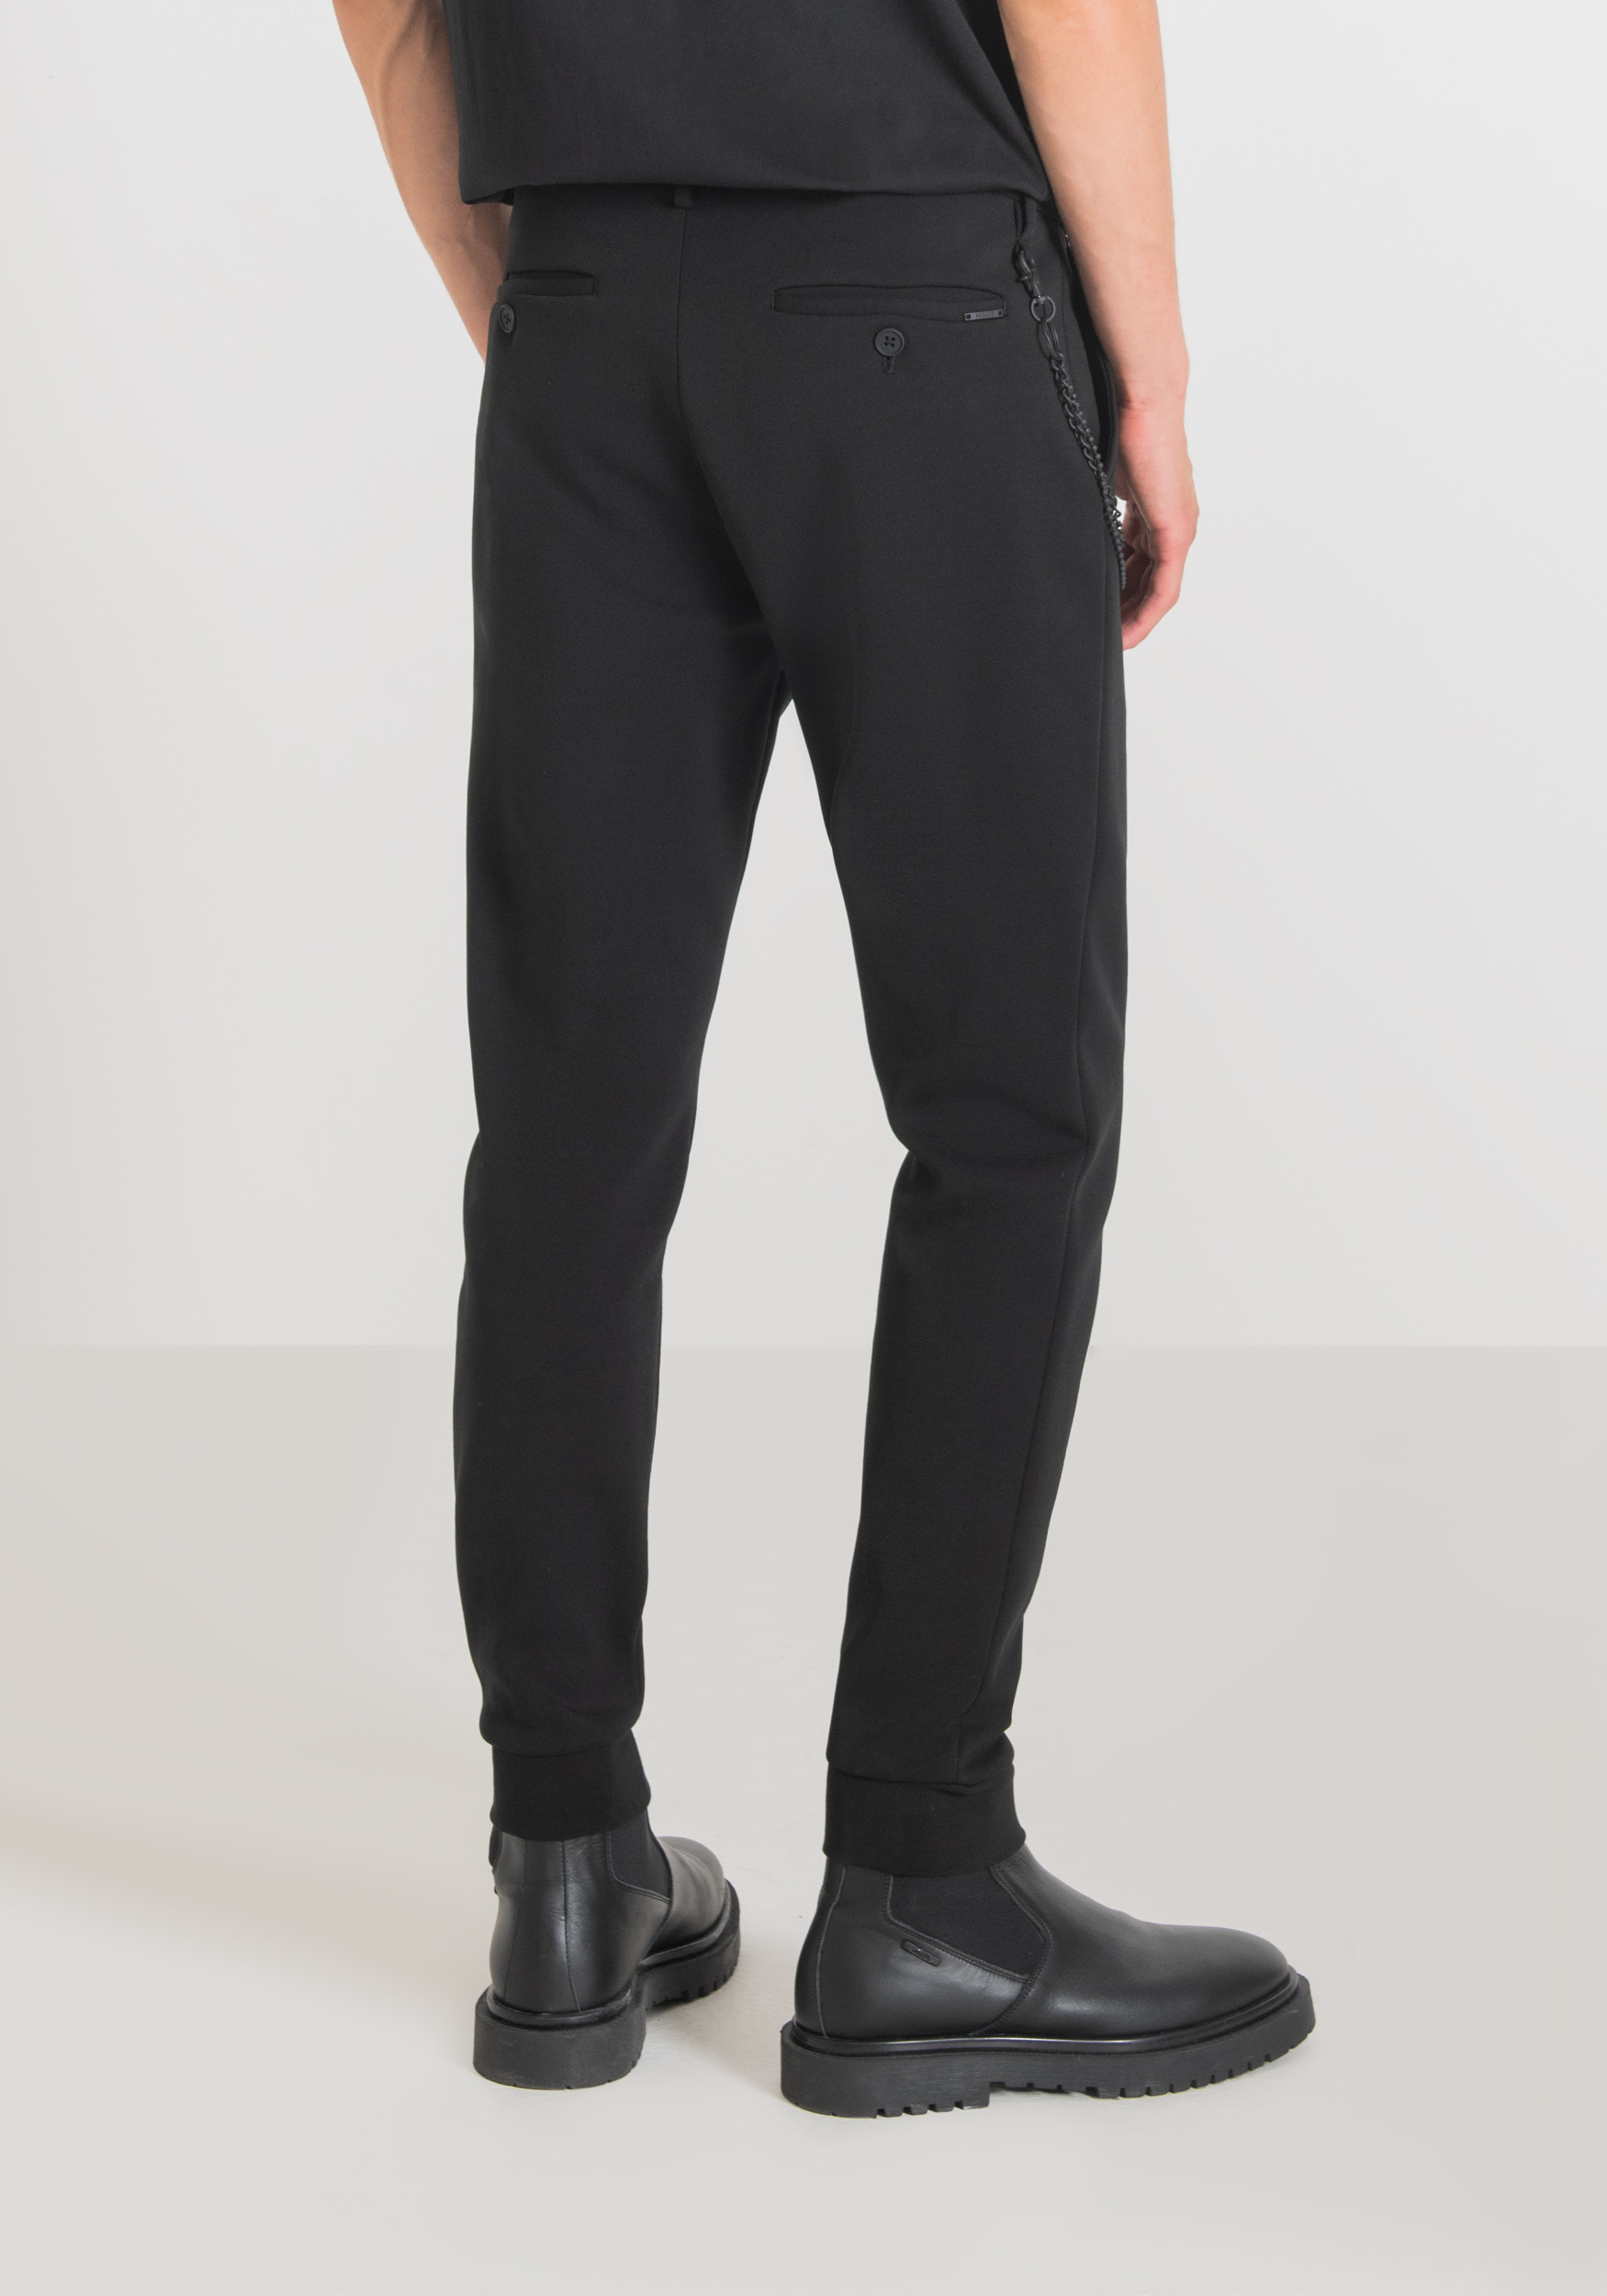 Antony Morato Pantalon Molletonne Skinny Fit En Coton Melange Avec Fermeture Boutonnee Et Bas Elastique Noir | Homme Pantalons